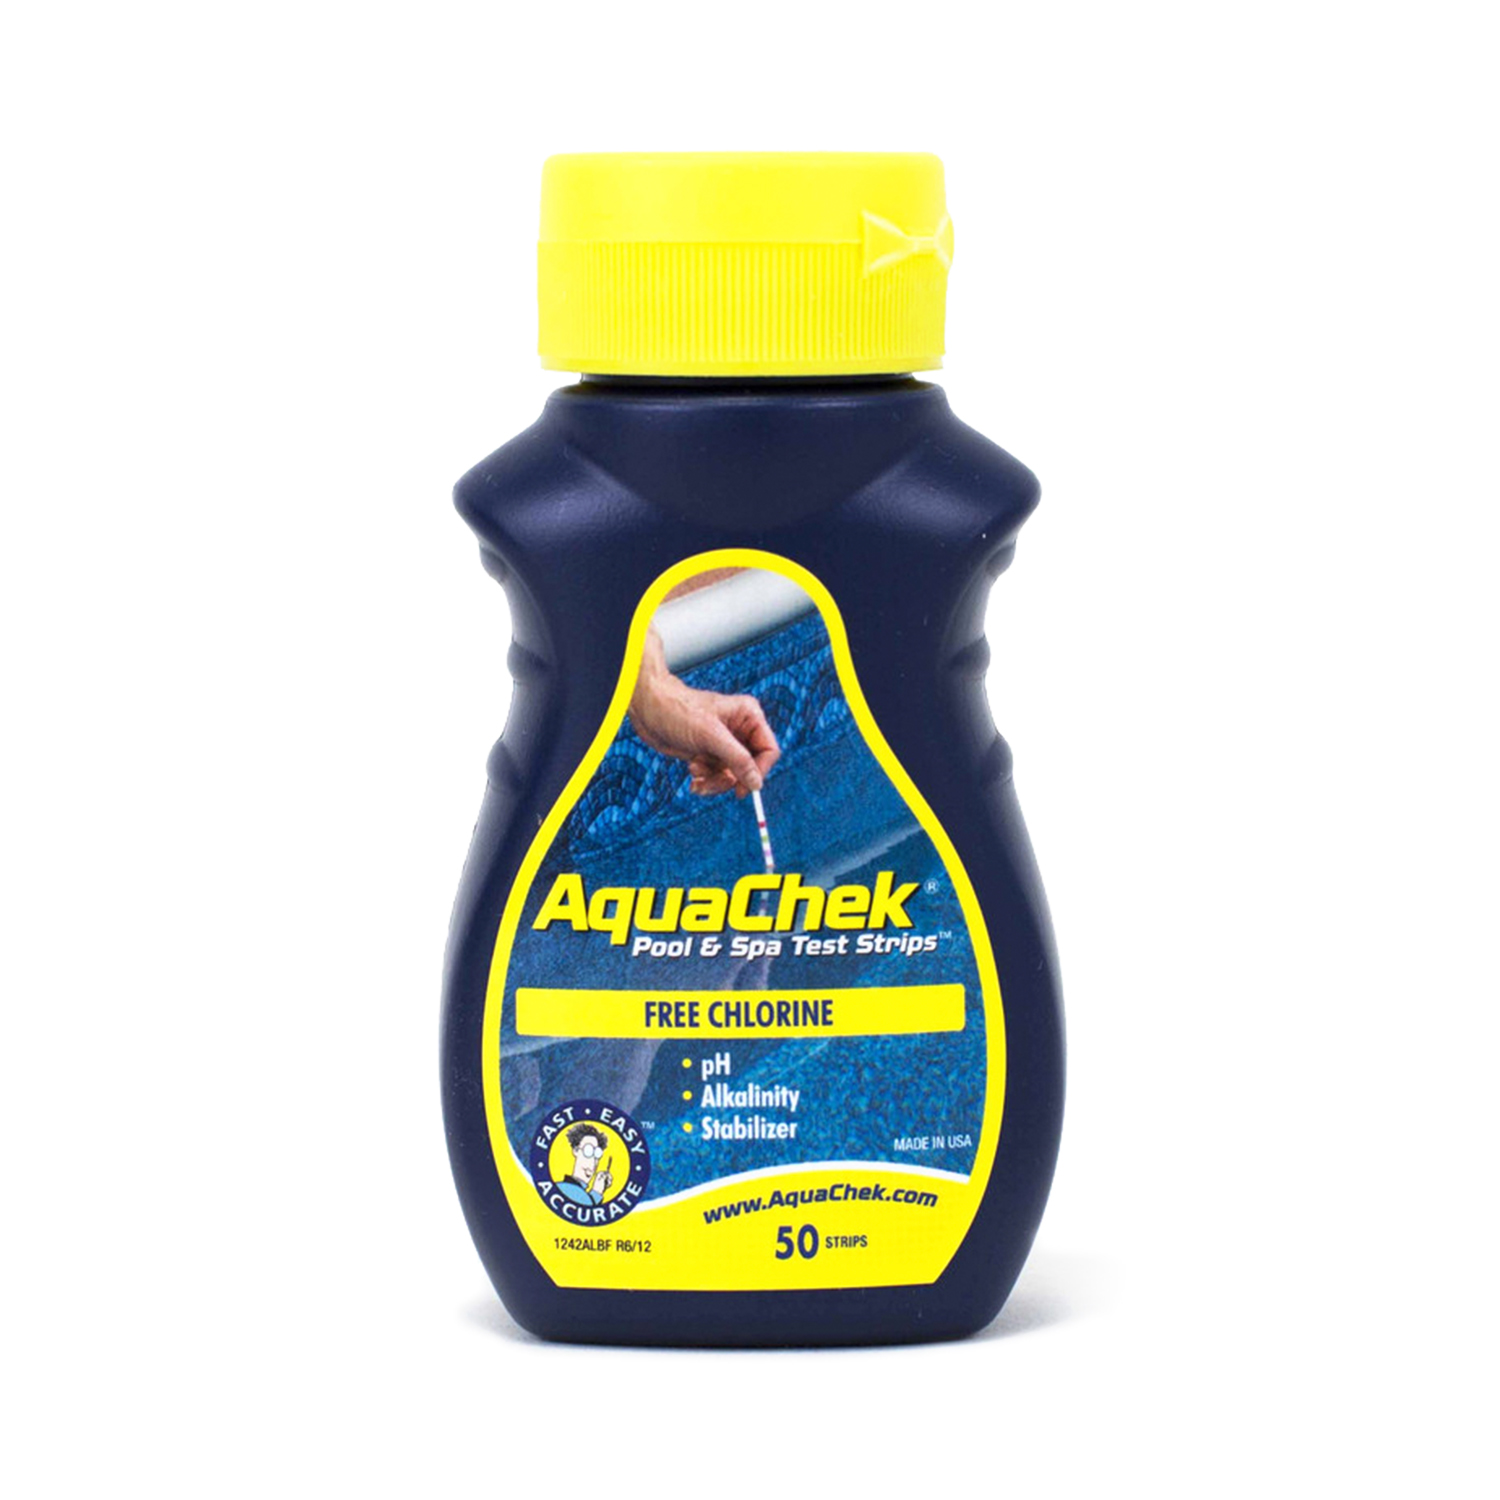 AquaChek Pool And Spa Test Strips Chlorine